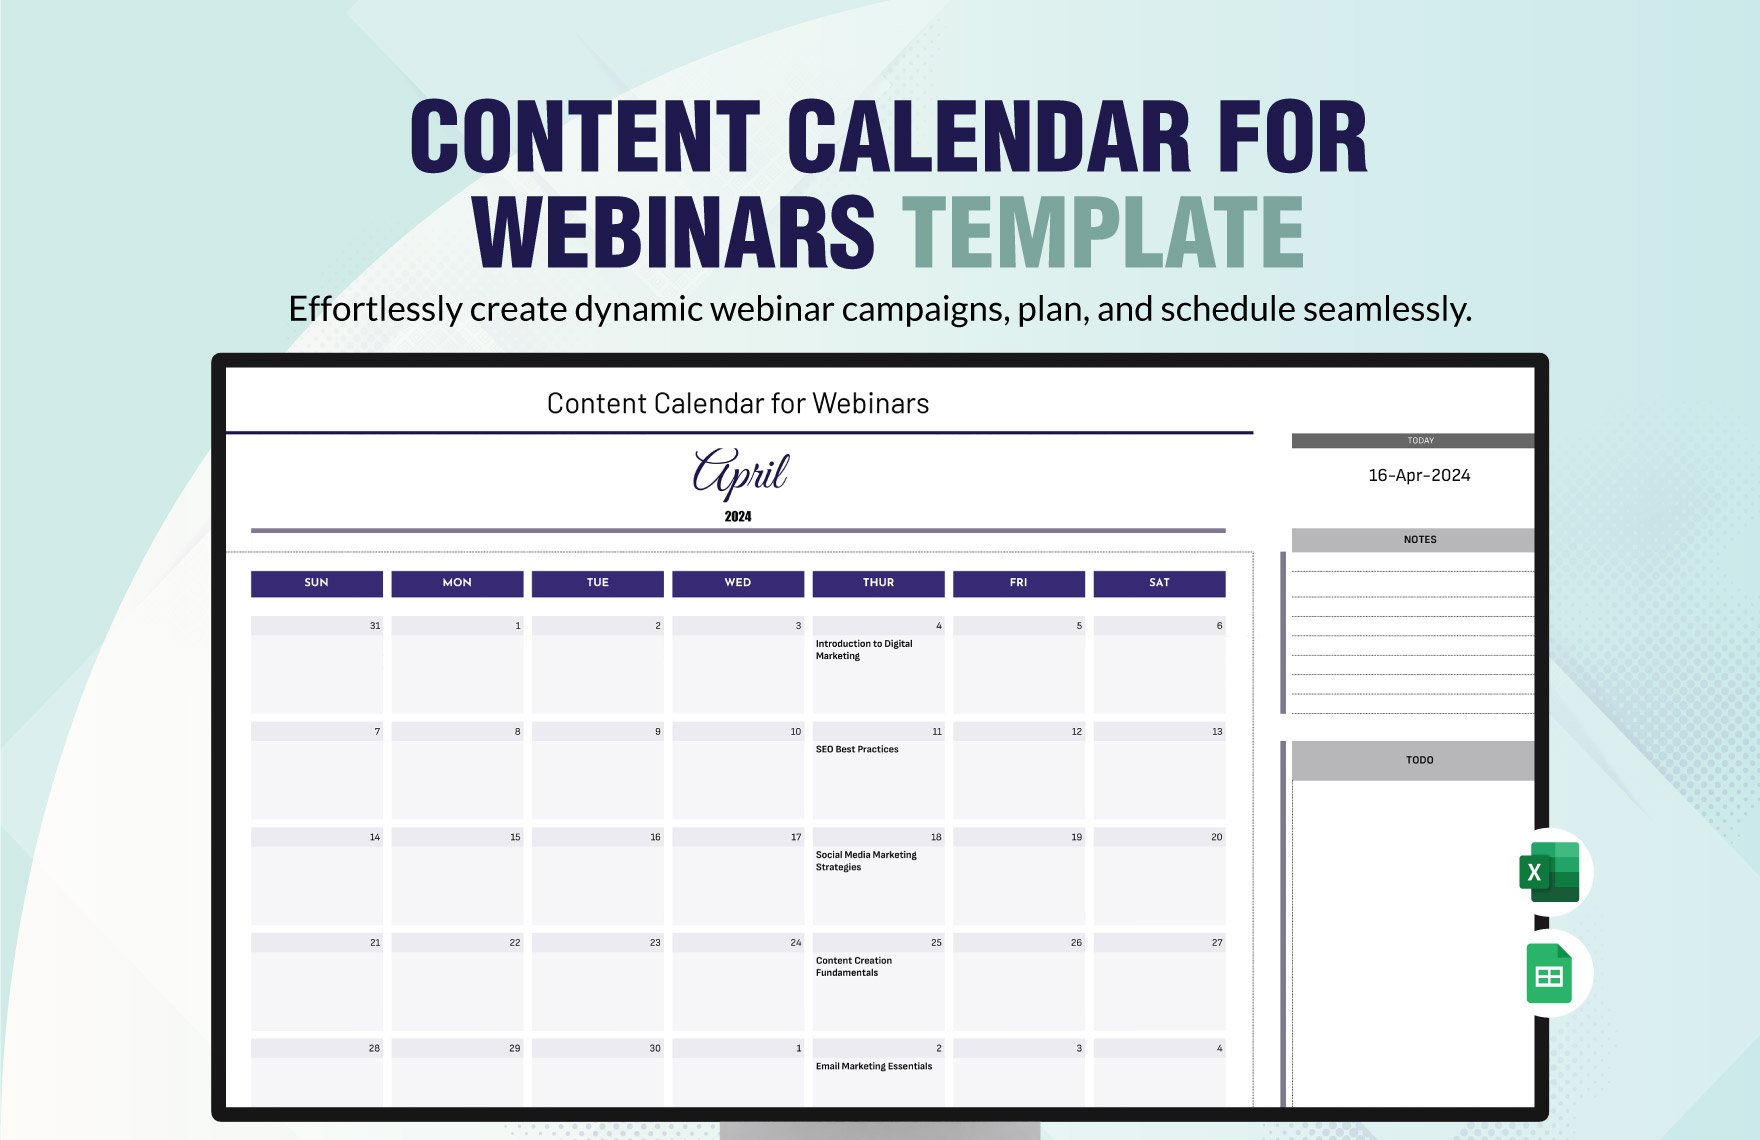 Content Calendar for Webinars Template